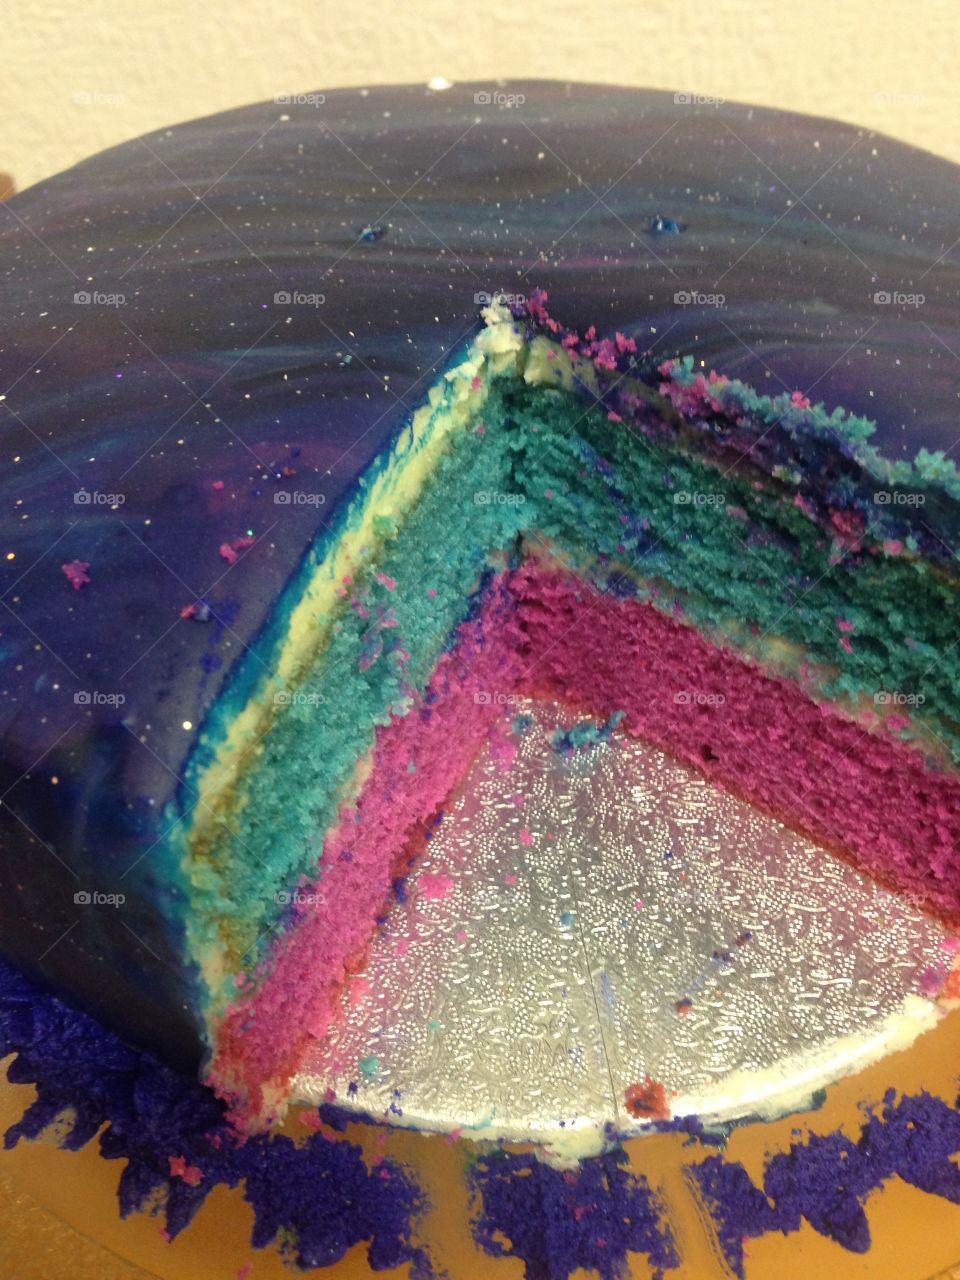 Galaxy birthday cake